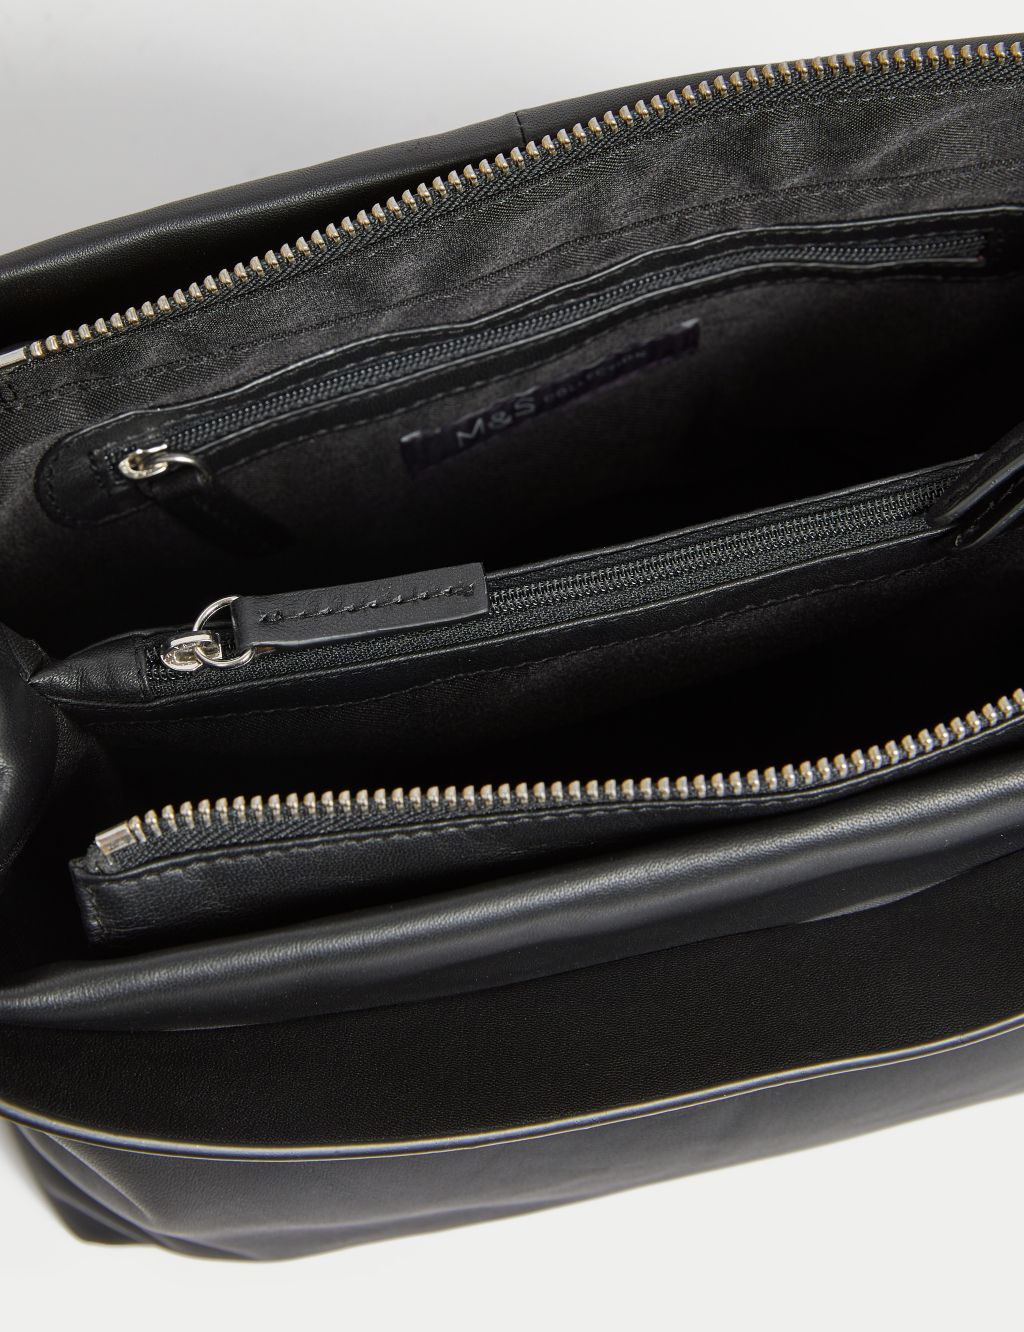 Leather Top Handle Shoulder Bag image 4